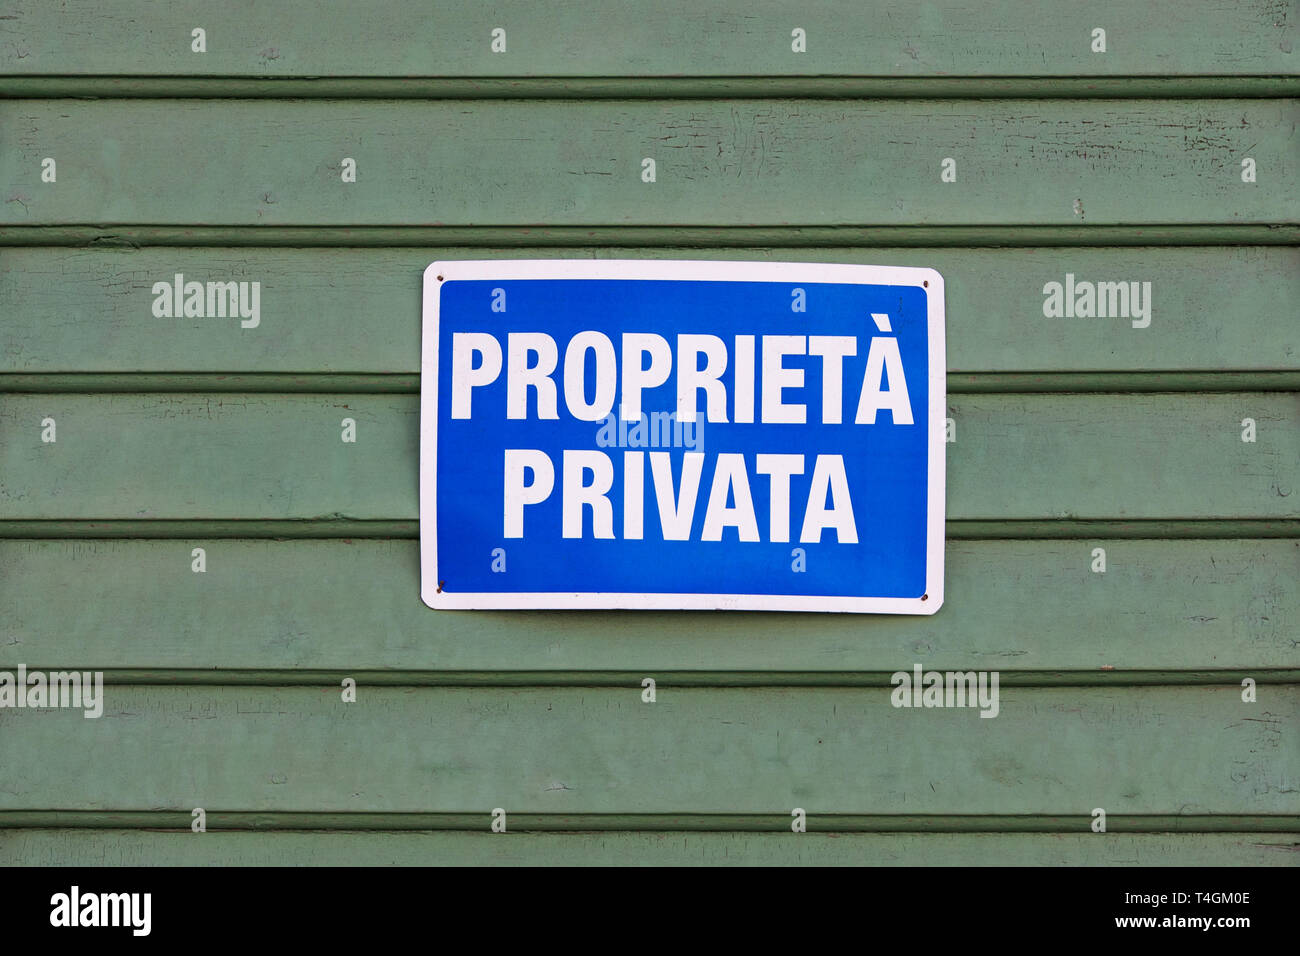 Proprietà privata (Private property) sign Stock Photo